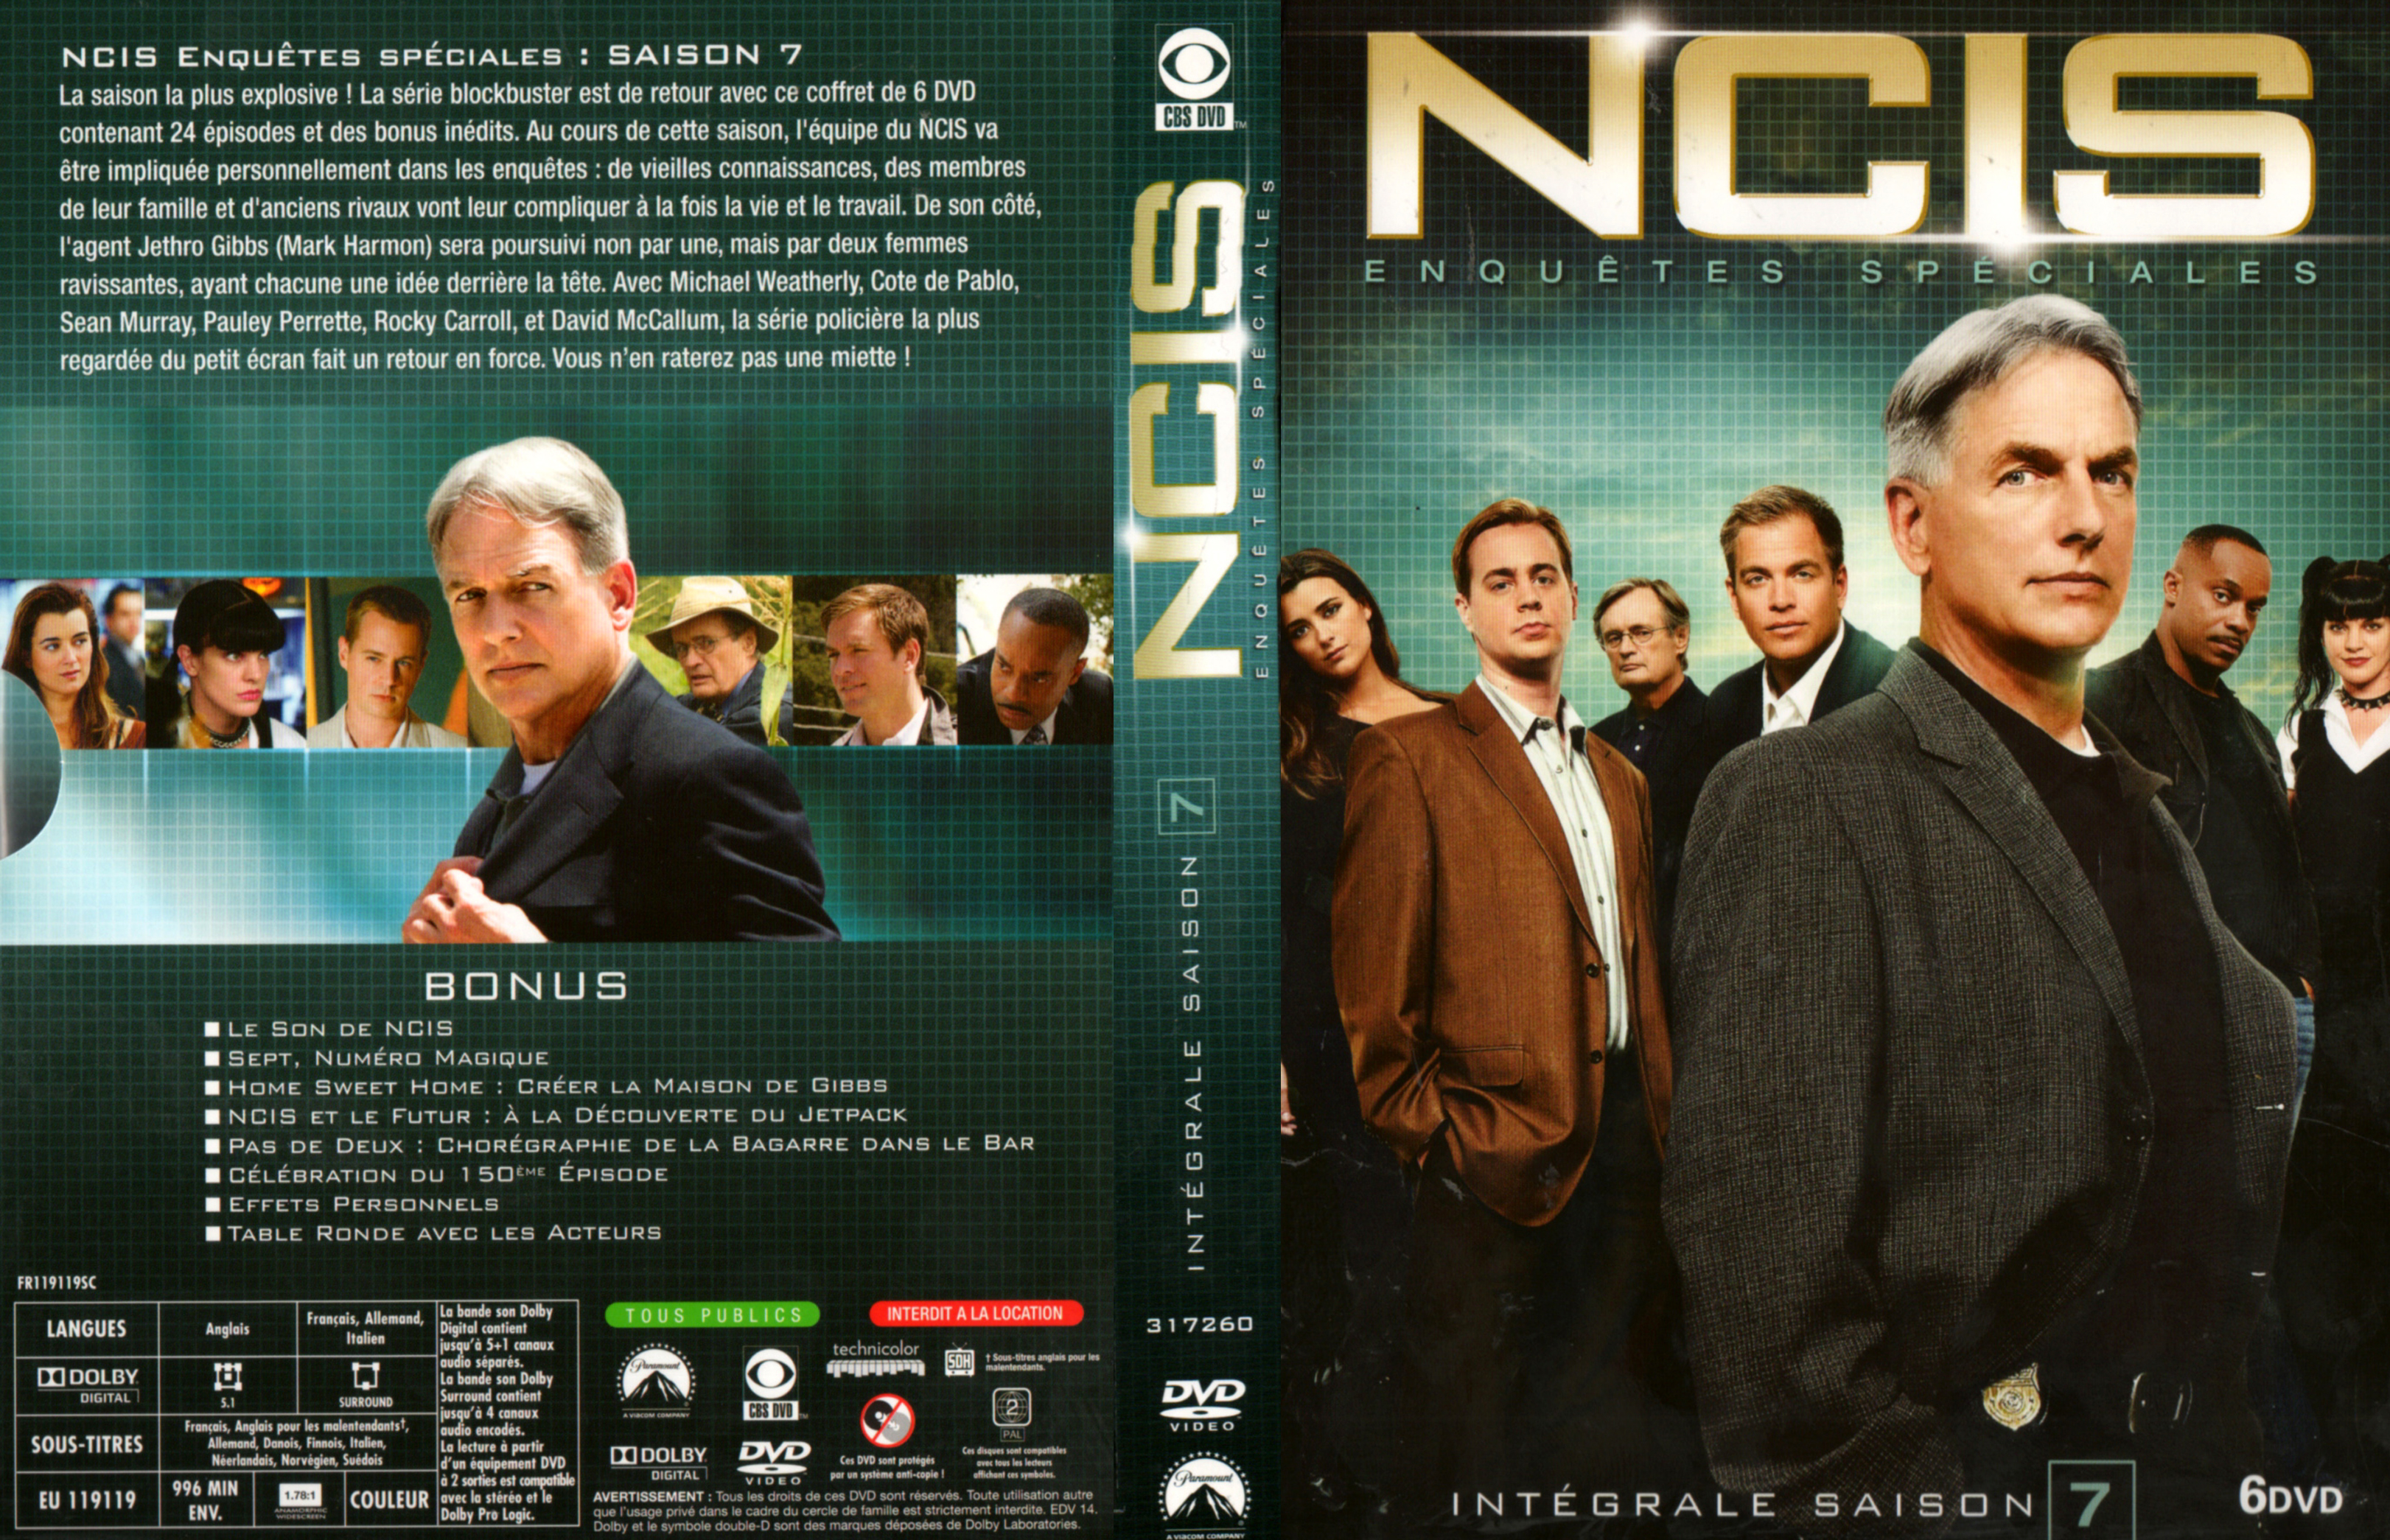 Jaquette DVD NCIS Saison 7 COFFRET